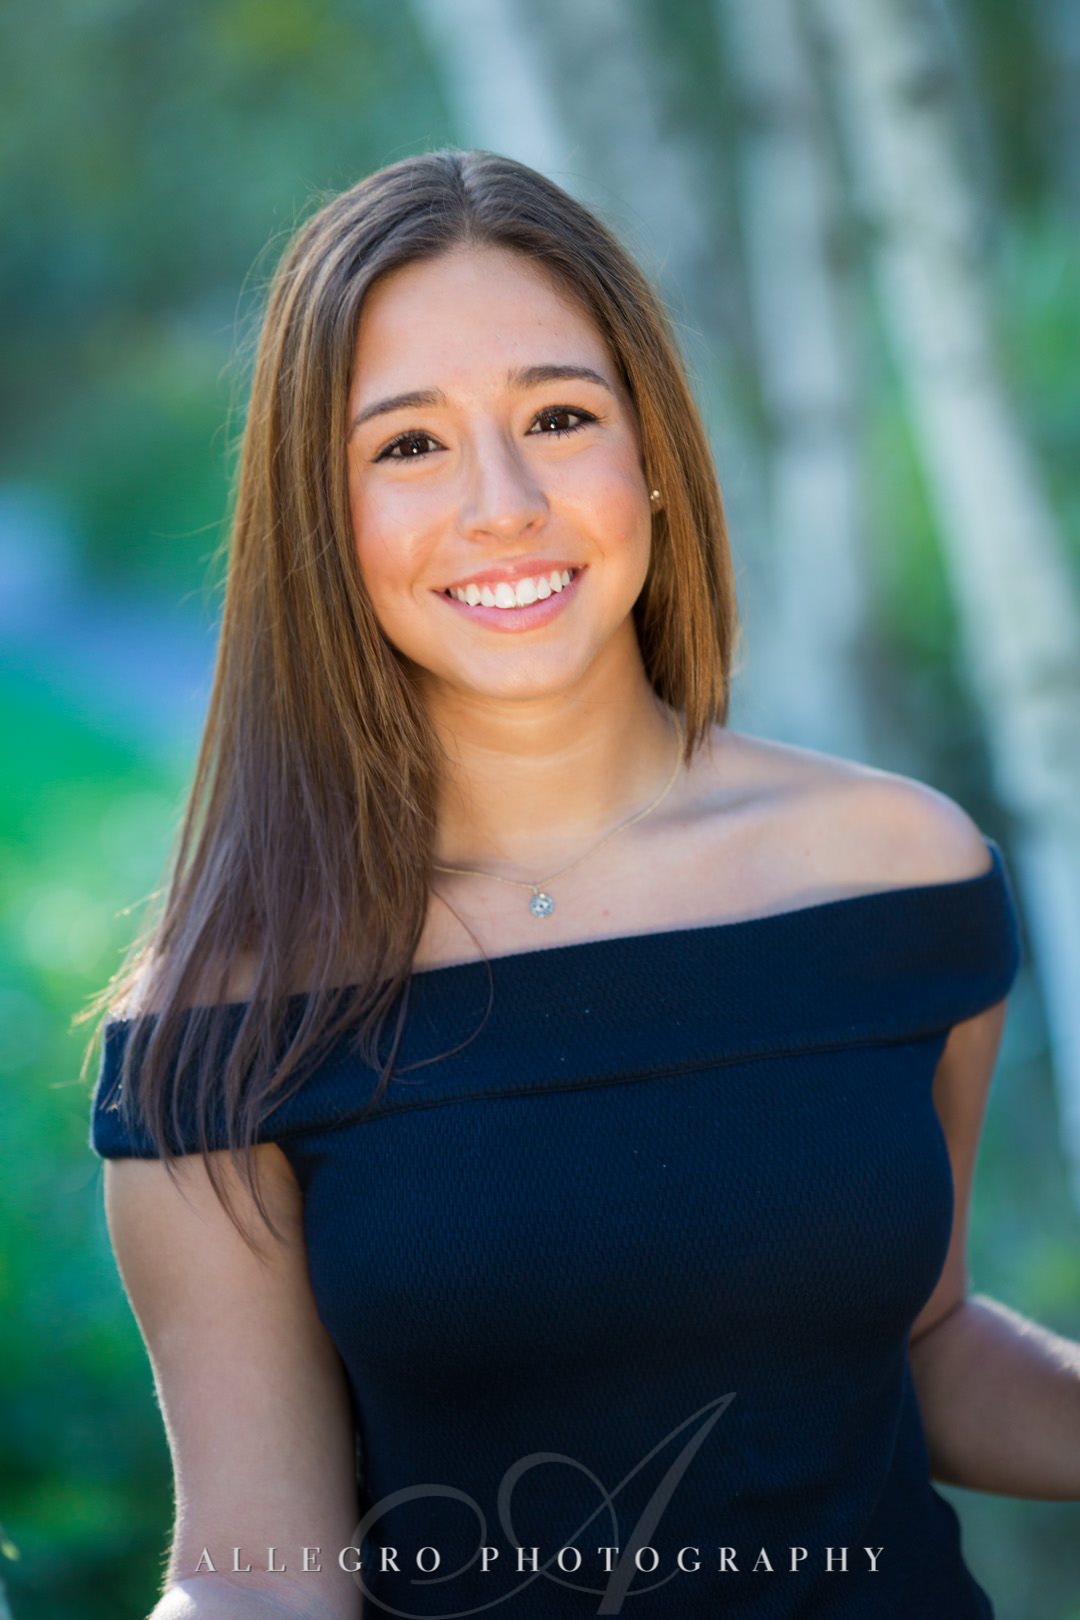 Senior high school girl smiling for portrait